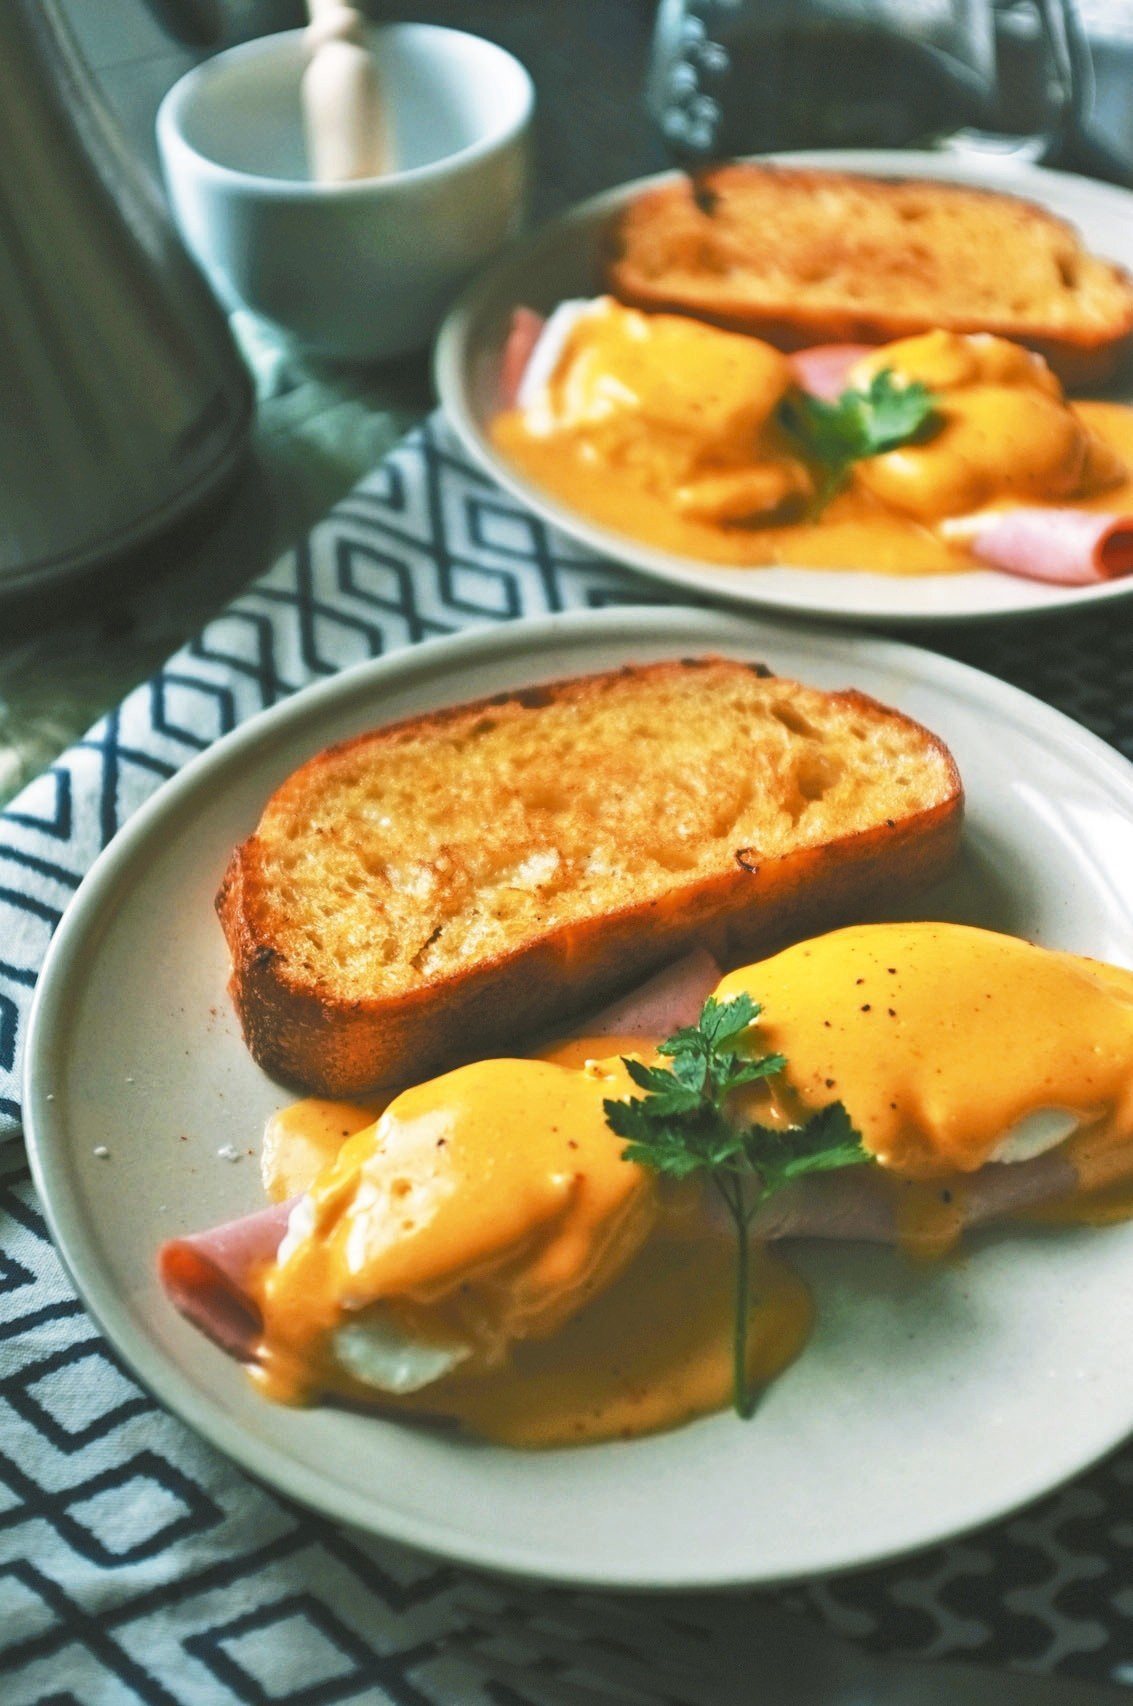 班尼迪克蛋 Egg Benedict
好吃的班尼迪克蛋有兩個關鍵––有個性的荷蘭醬與半熟的水波蛋。